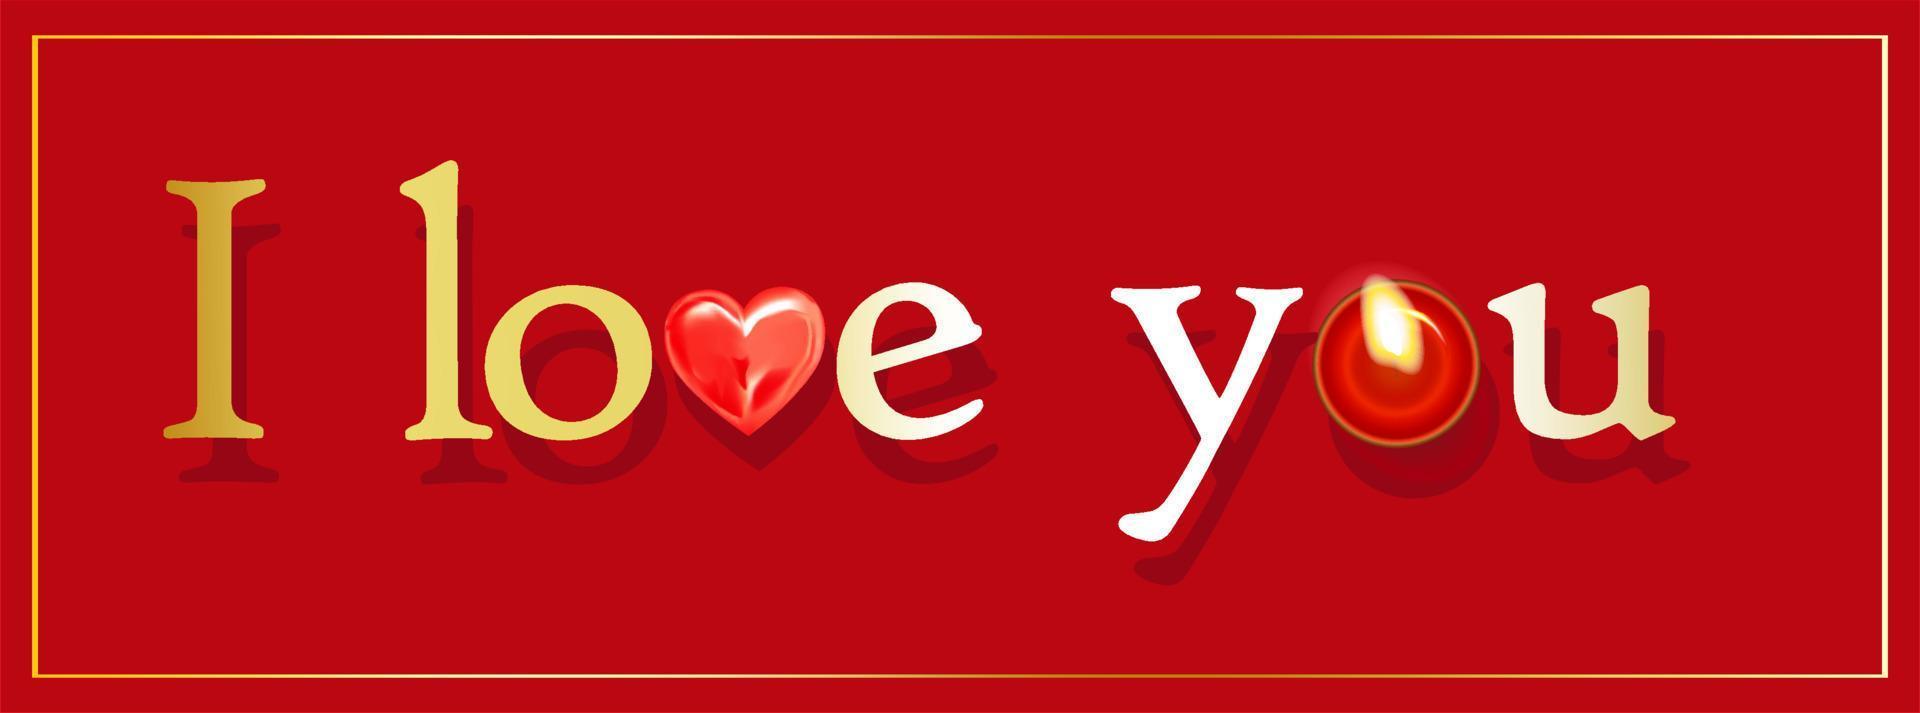 ich liebe dich. text oder beschriftung in englisch. verliebt sagen. romantische Grußkarte. Valentinstag, 14. Februar. roter Hintergrund. Vektor-Illustration. vektor